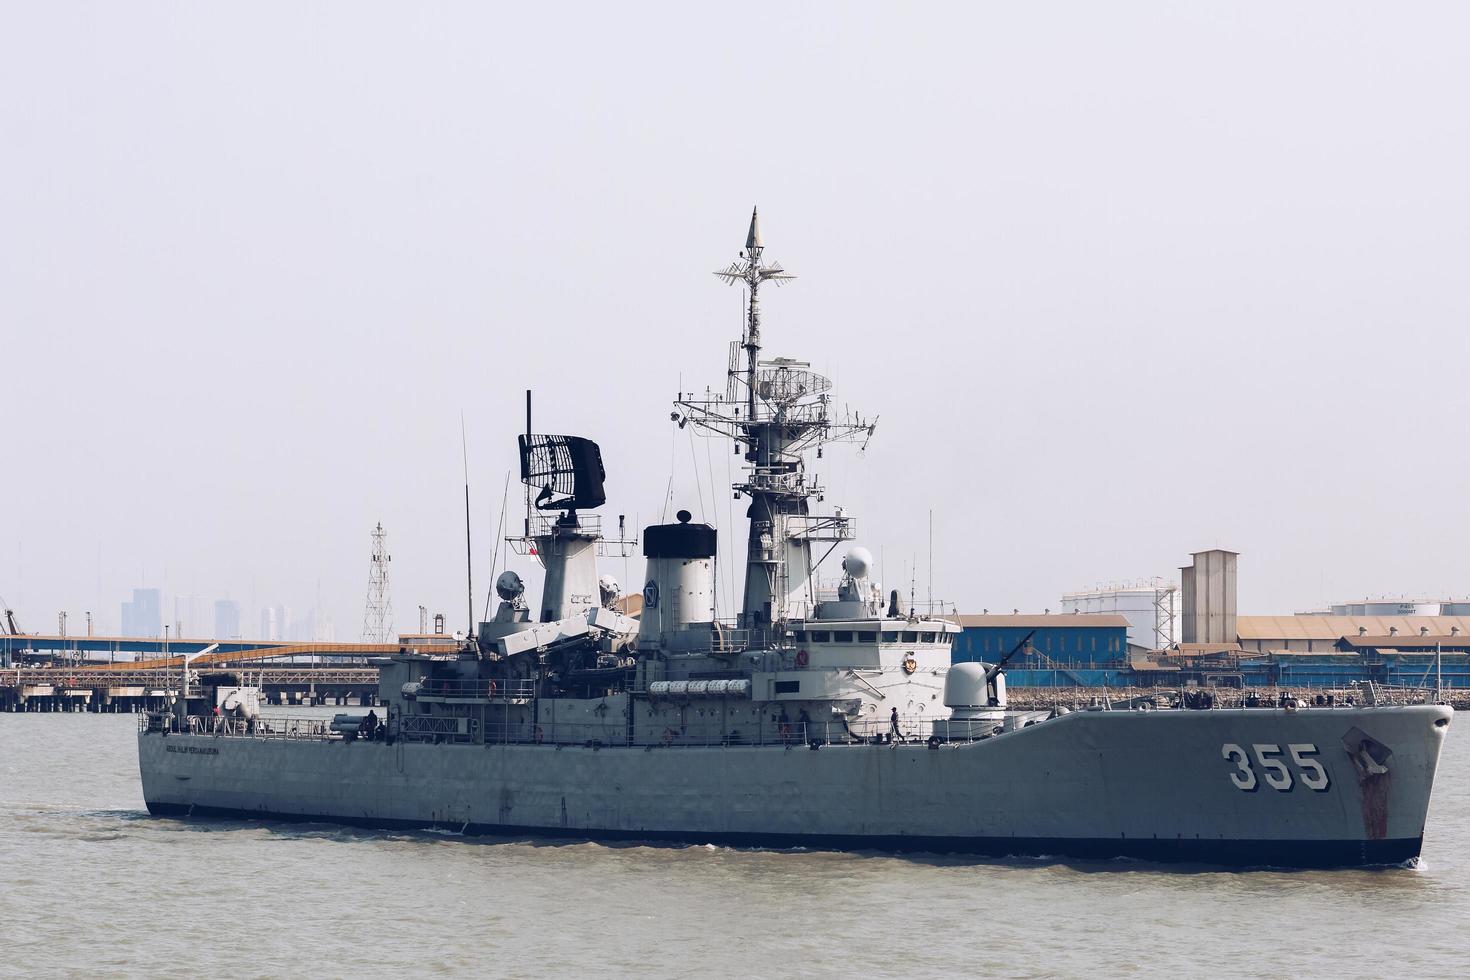 la marine indonésienne voile kri kri abdul halim perdanakusuma 355 cuirassé frégate dans le détroit de madura près du port de tanjung perak surabaya. surabaya, indonésie - avril 2019 photo